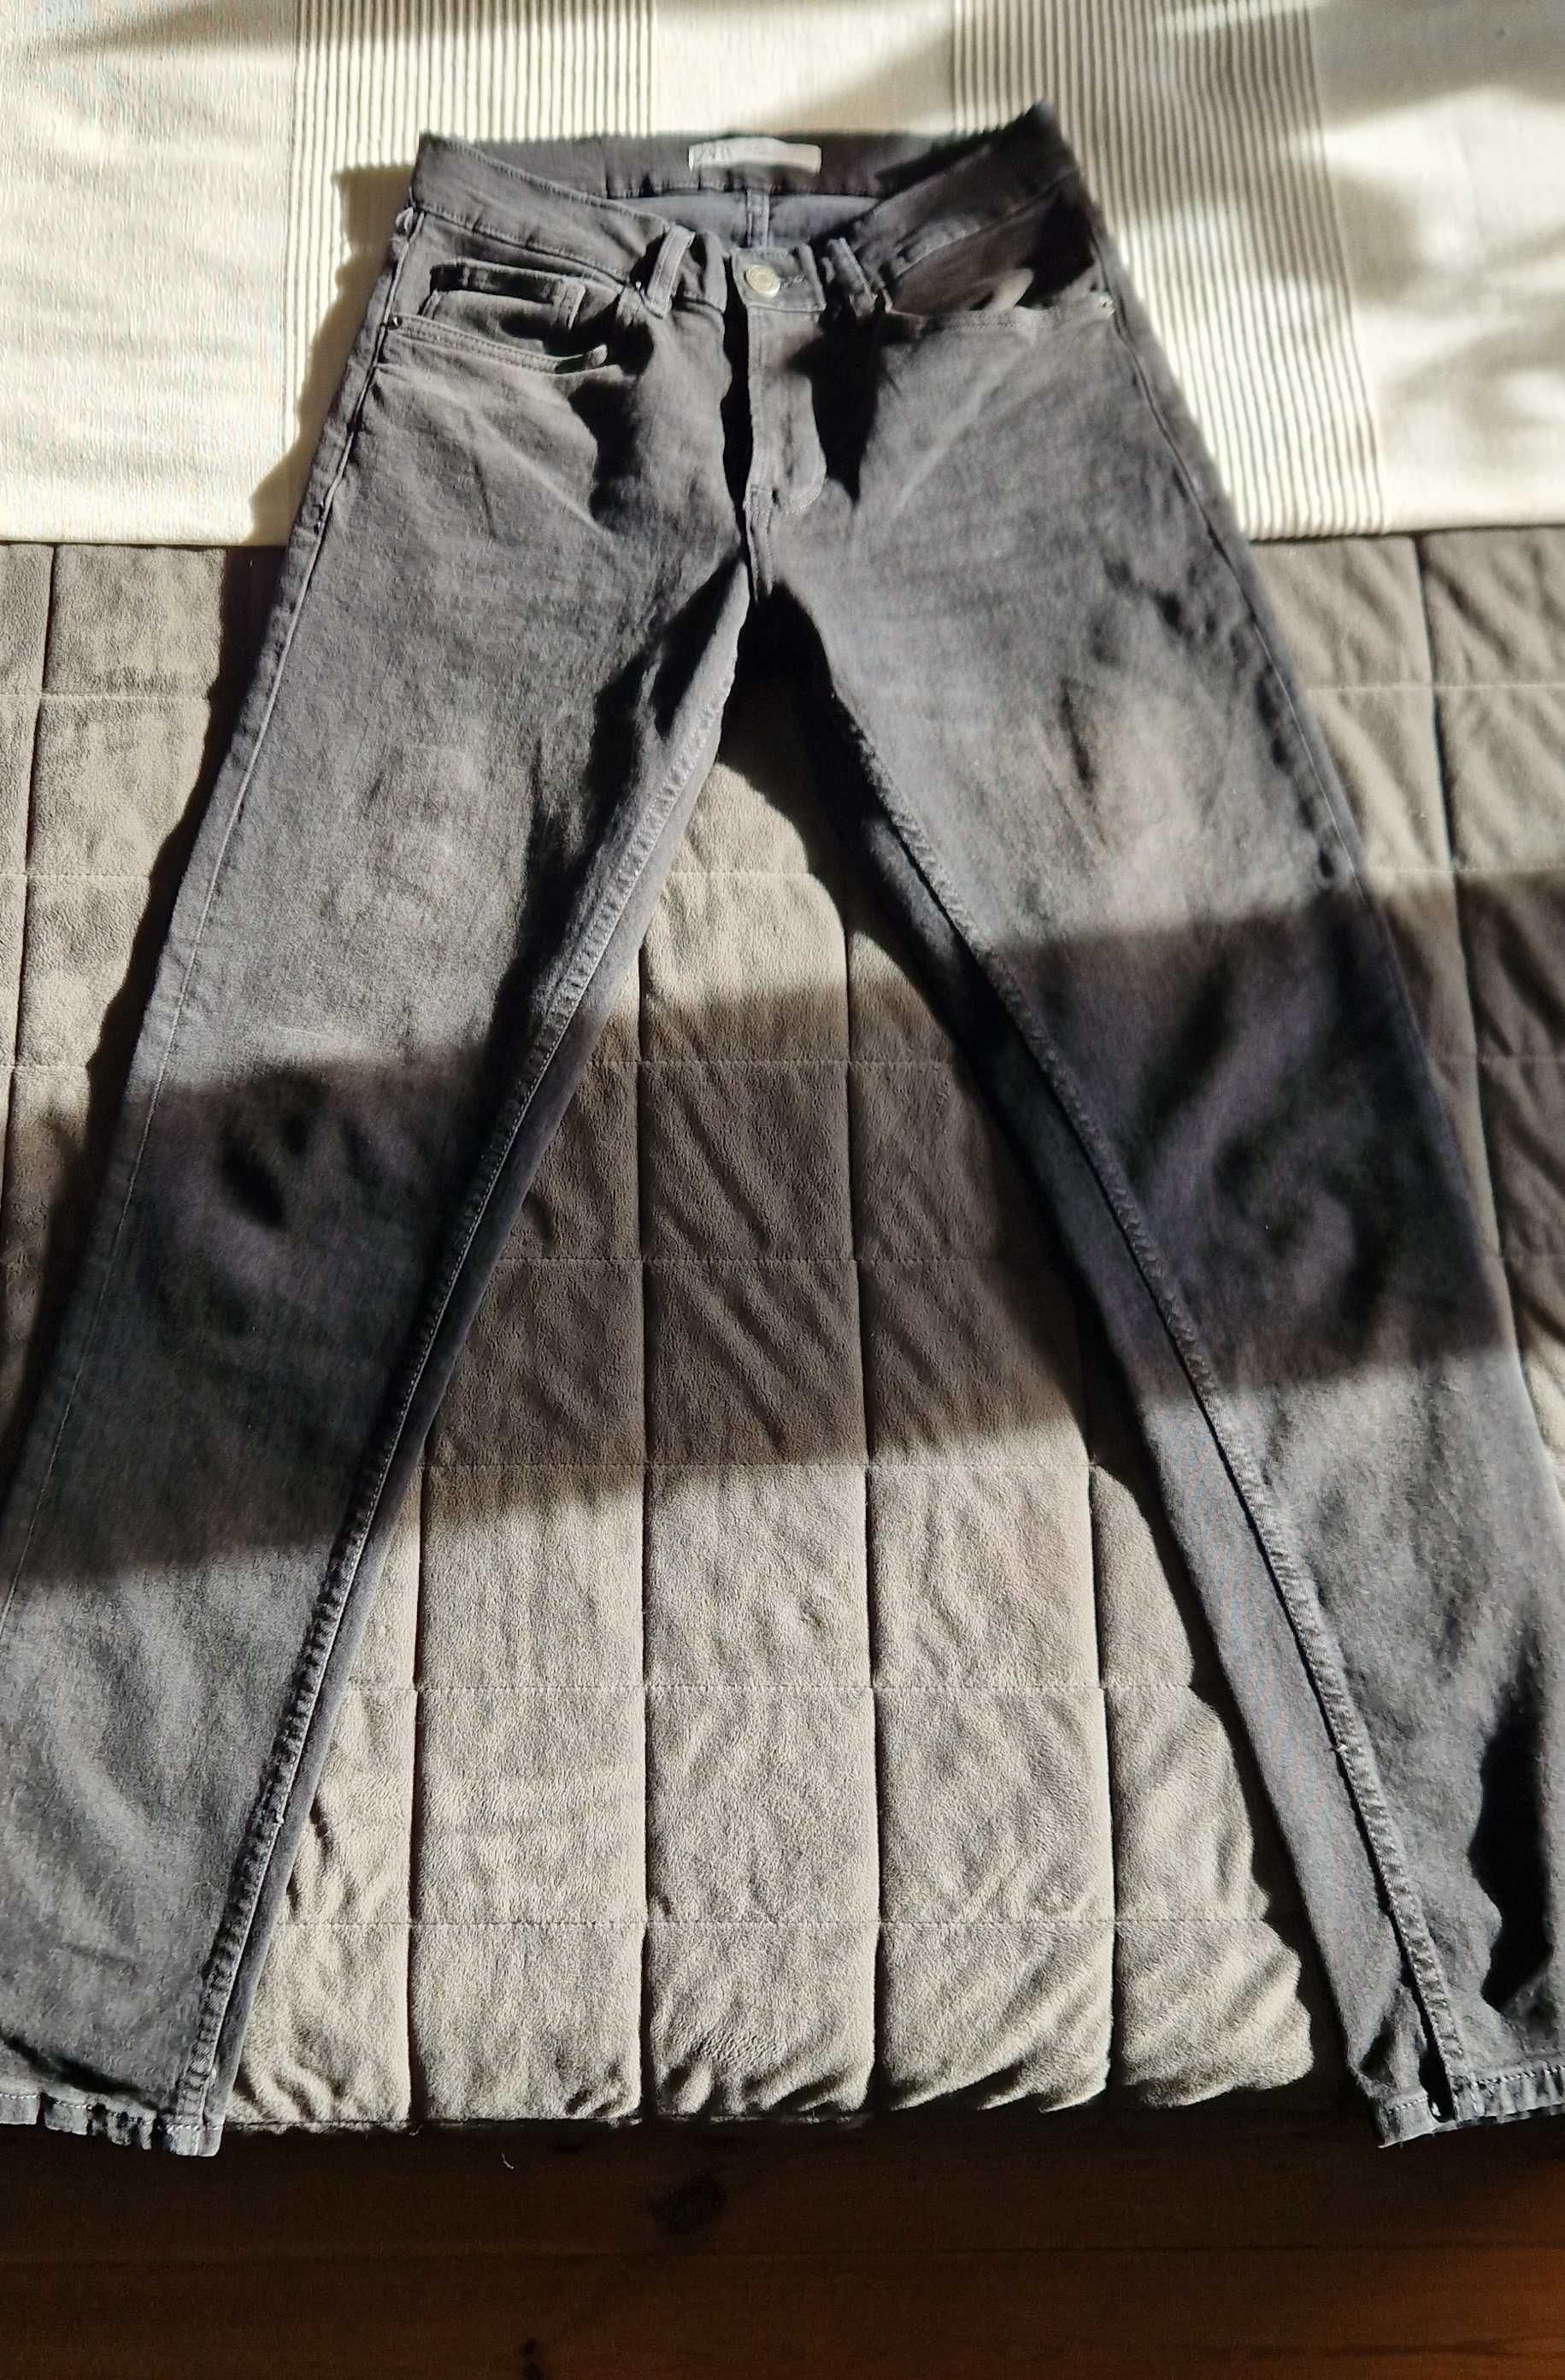 ZARA spodnie męskie jeansy czarne  Euro 36 jak nowe